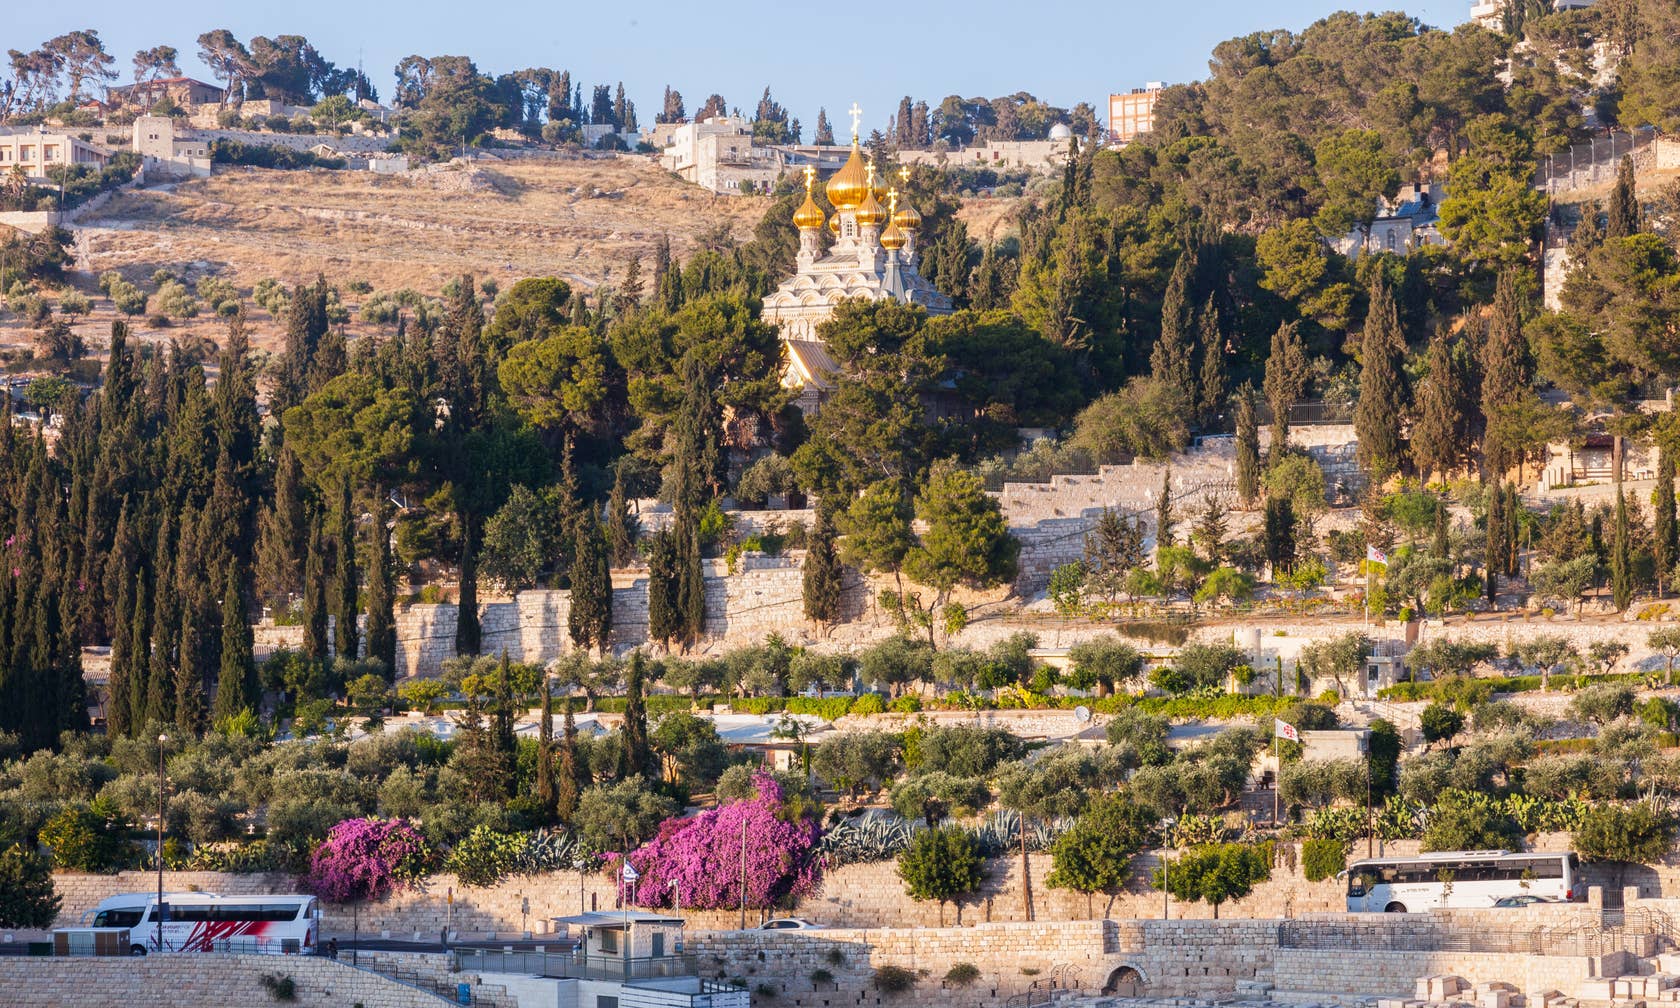 Affitti per le vacanze a Gerusalemme